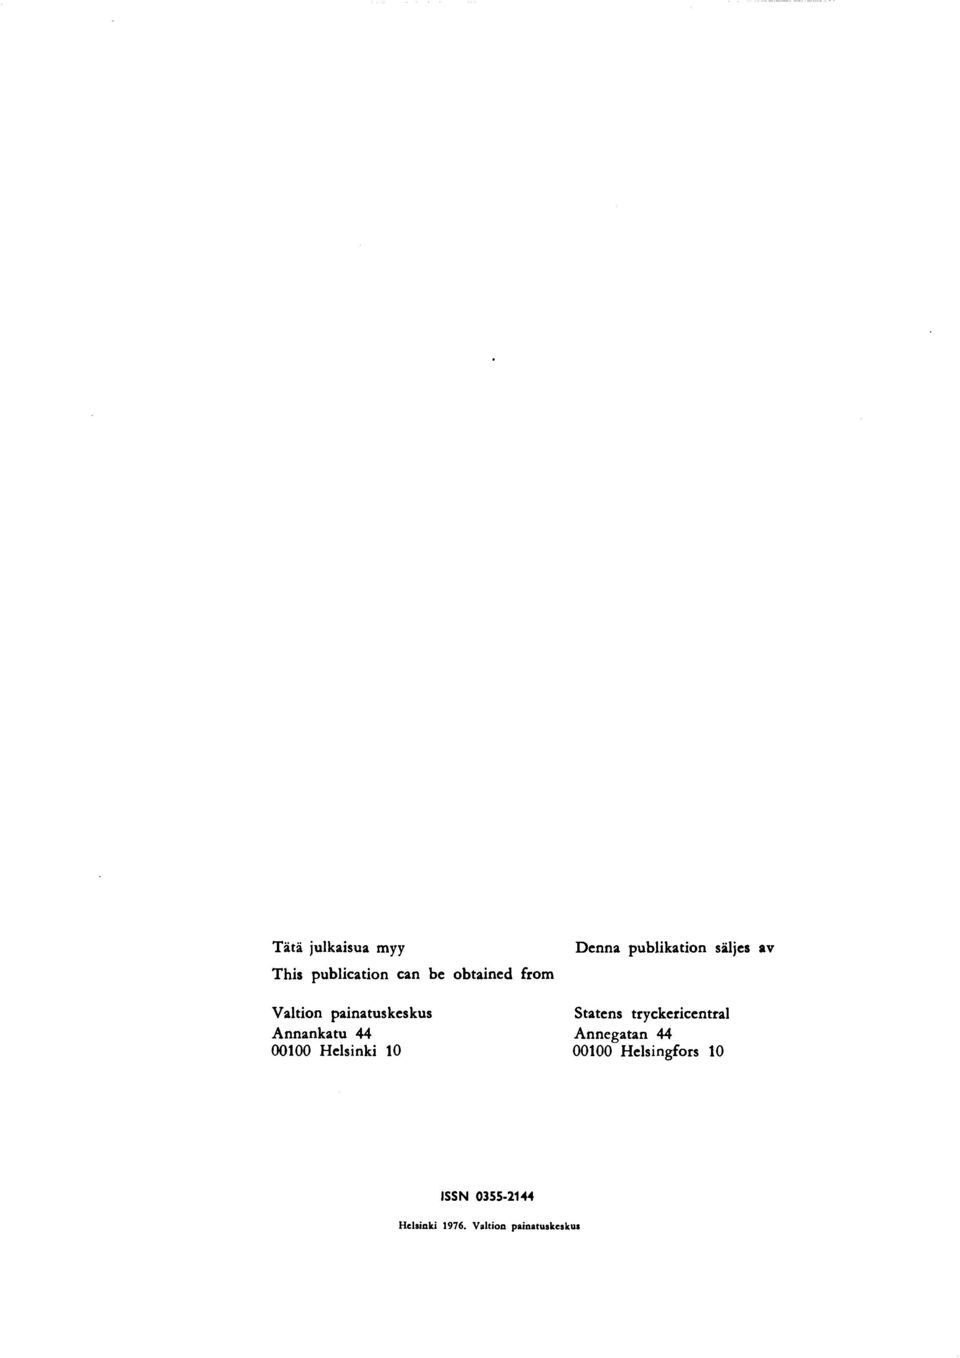 publikation säljes av Statens tryckericentral Annegatan 44